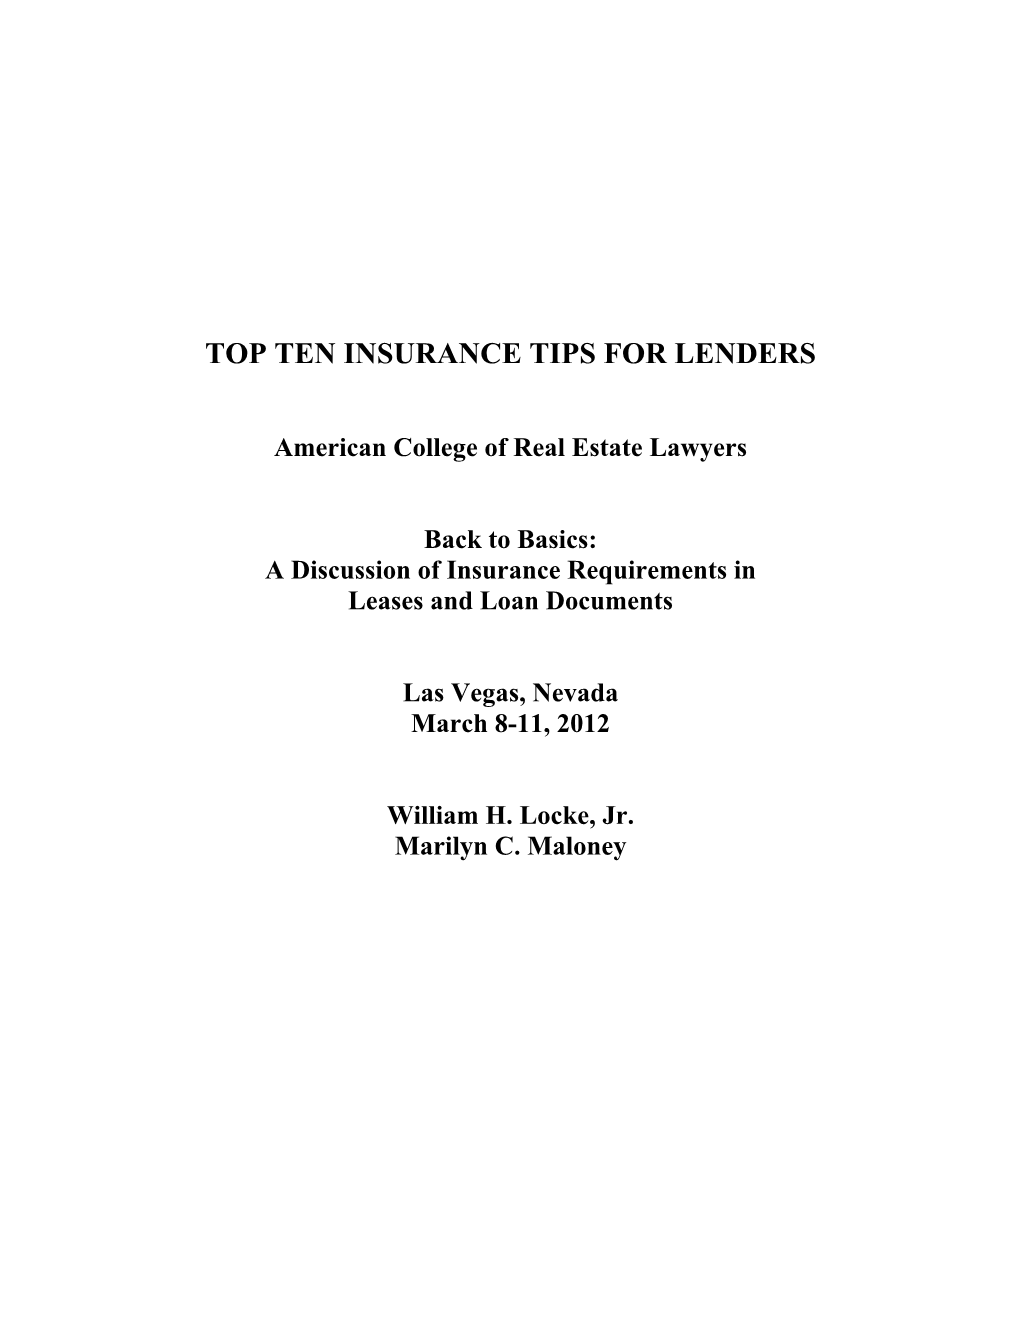 Top Ten Insurance Tips for Lenders